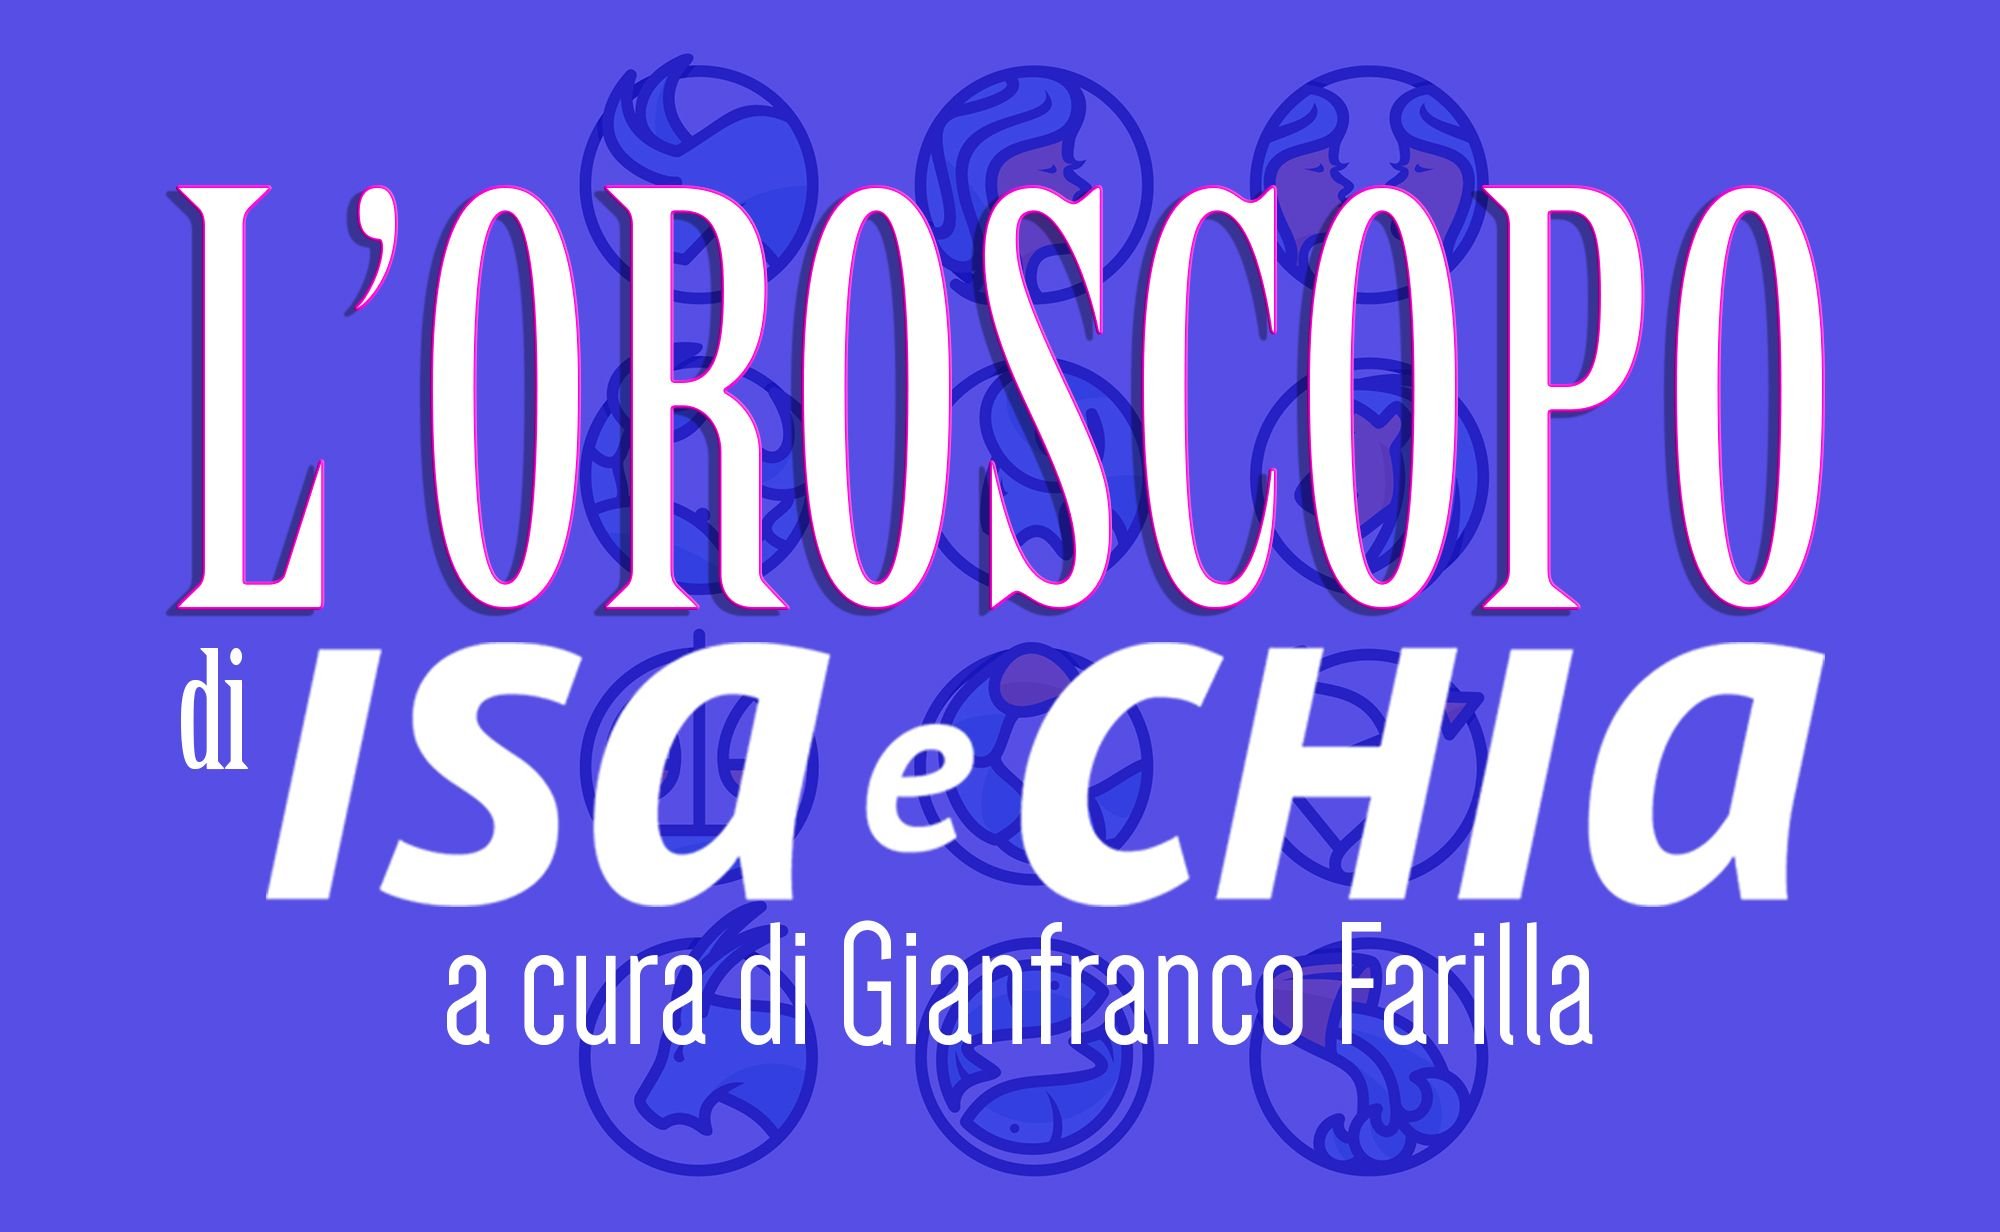 ‘L’oroscopo di Isa e Chia’ dal 17 al 23 settembre (a cura di Gianfranco Farilla)